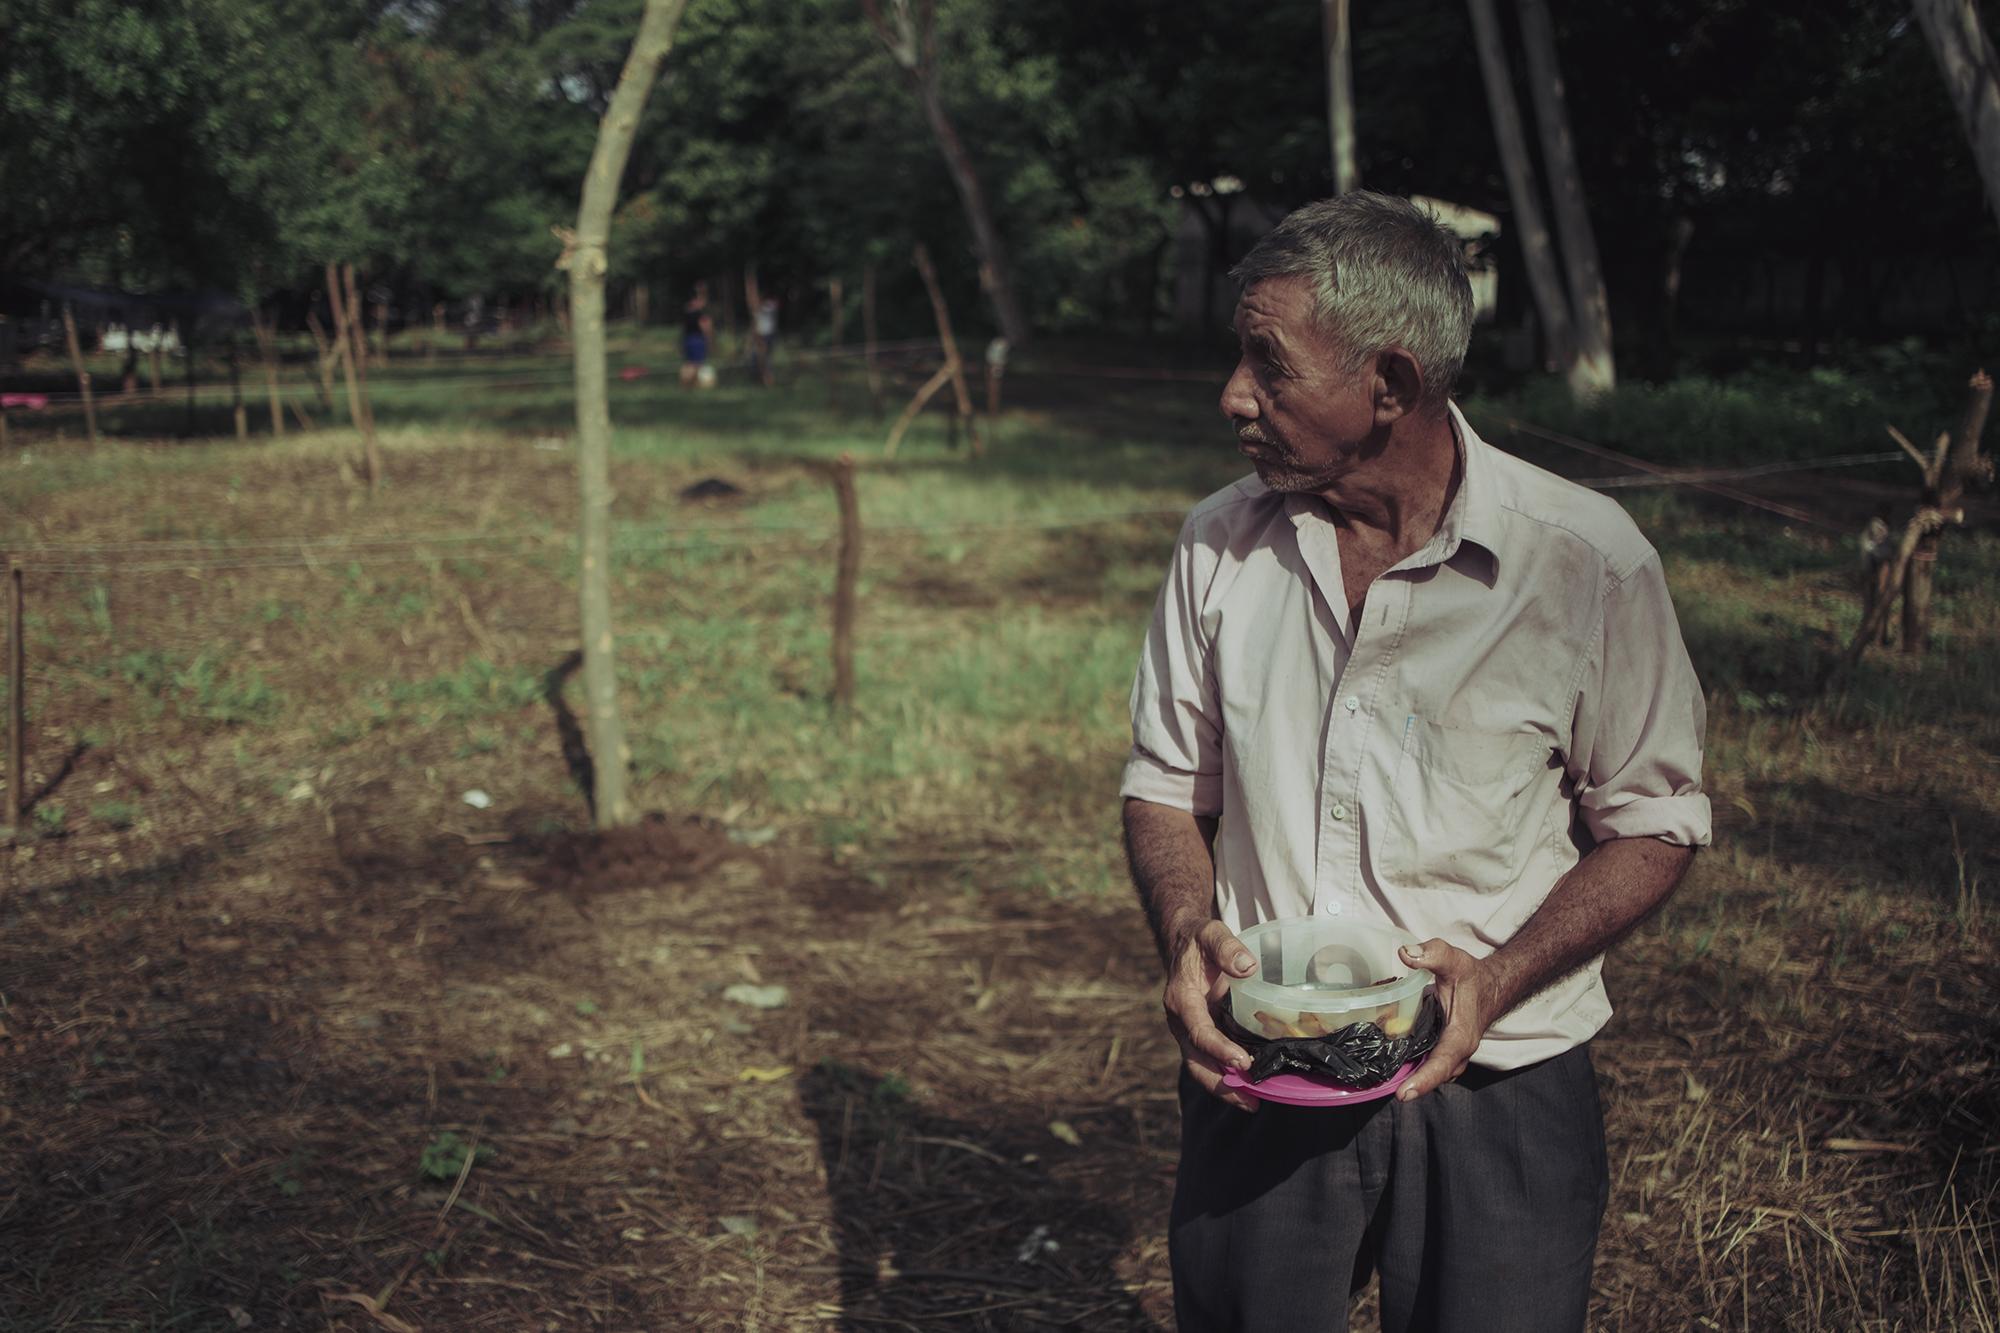 José Darío Argueta, de 74 años, tiene un espacio en el nuevo asentamiento. Hasta hace un tiempo vivía de la albañilería, pero su cuerpo no da más. Darío nunca ha tenido un hogar propio, no tiene pensión y ahora busca un lugar digno donde pasar sus días. 